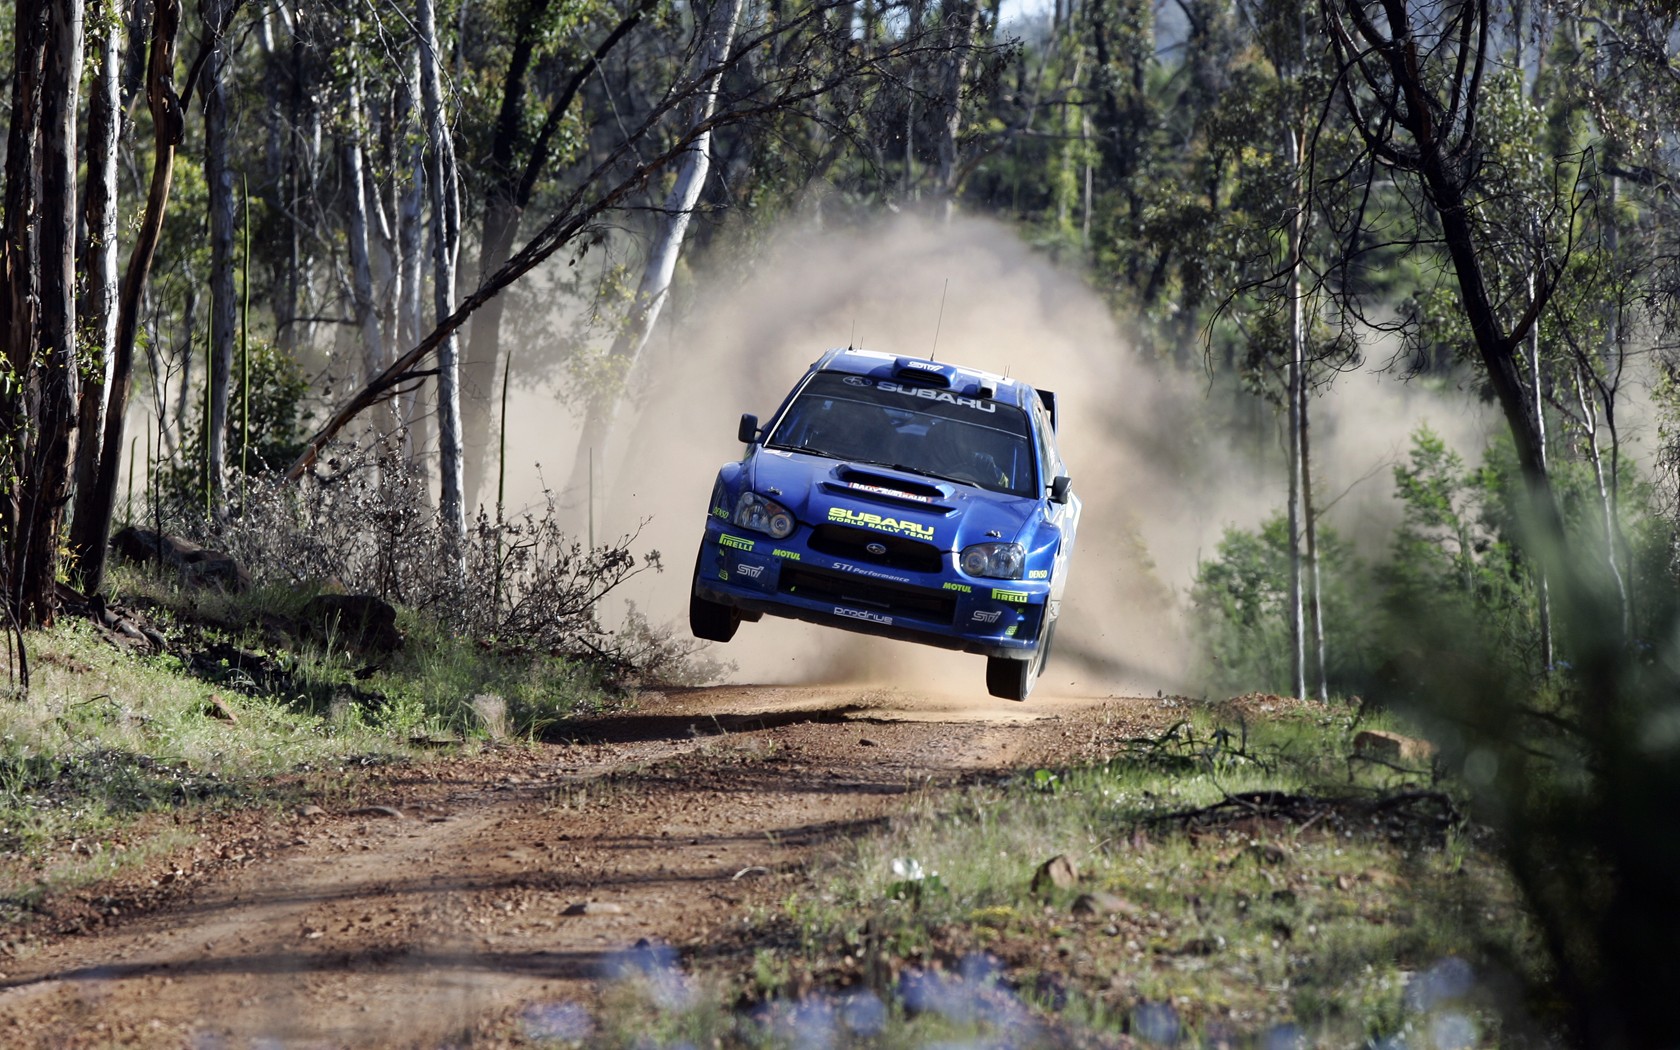 Wallpaper Px Car Jumping Racing Rally Cars Subaru